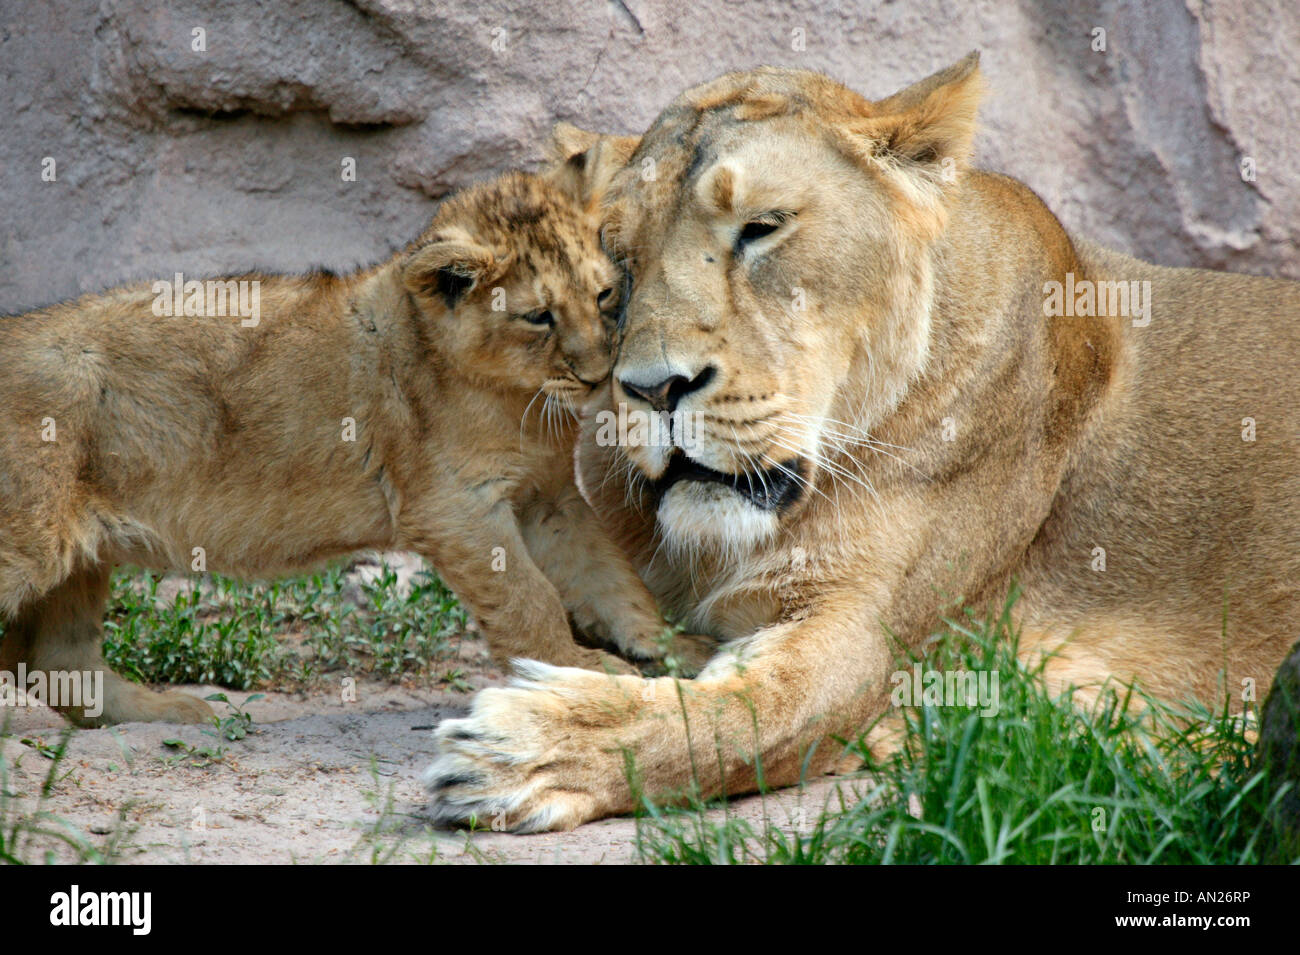 Asiatischer Löwe Panthero leo persica Asiatic Lion Jungtiere Stock Photo